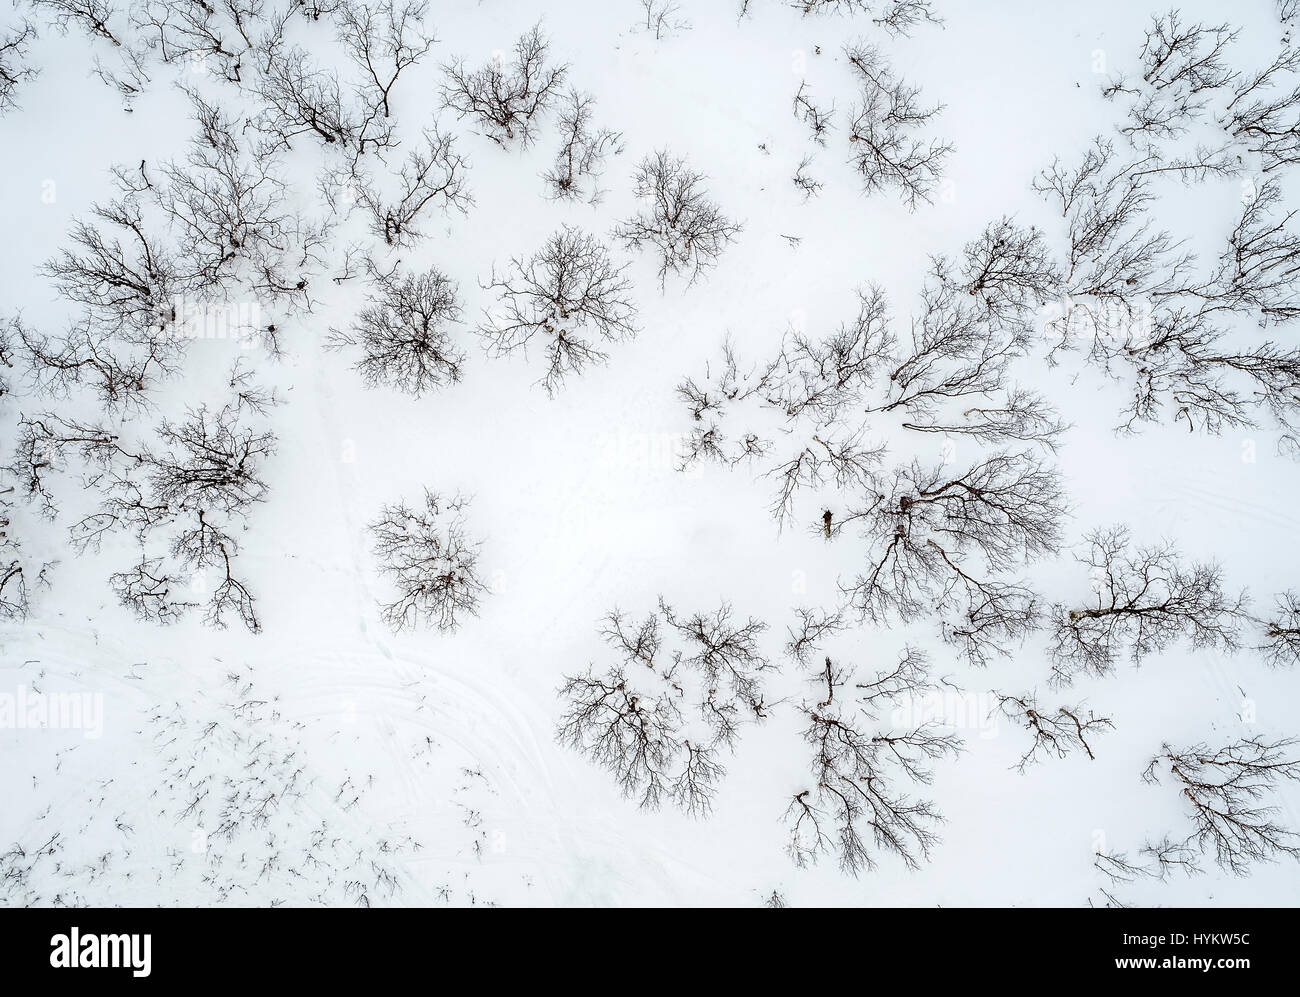 Les arbres de l'hiver, Laponie, Suède. Photographie de drones Banque D'Images